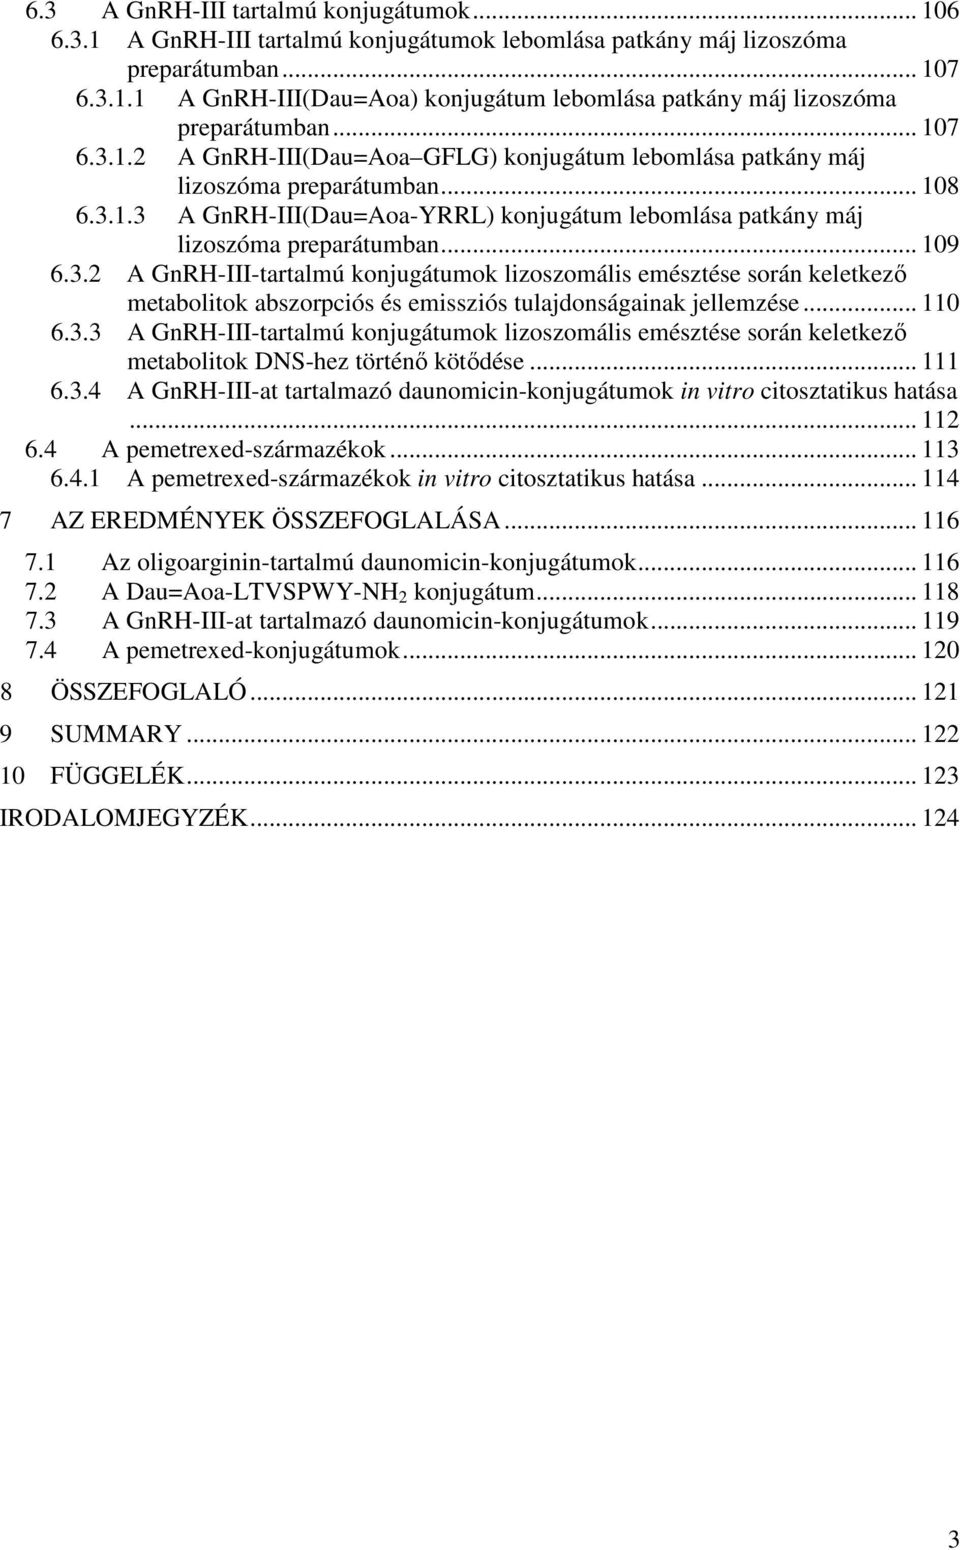 .. 109 6.3.2 A GnRH-III-tartalmú konjugátumok lizoszomális emésztése során keletkező metabolitok abszorpciós és emissziós tulajdonságainak jellemzése... 110 6.3.3 A GnRH-III-tartalmú konjugátumok lizoszomális emésztése során keletkező metabolitok DNS-hez történő kötődése.